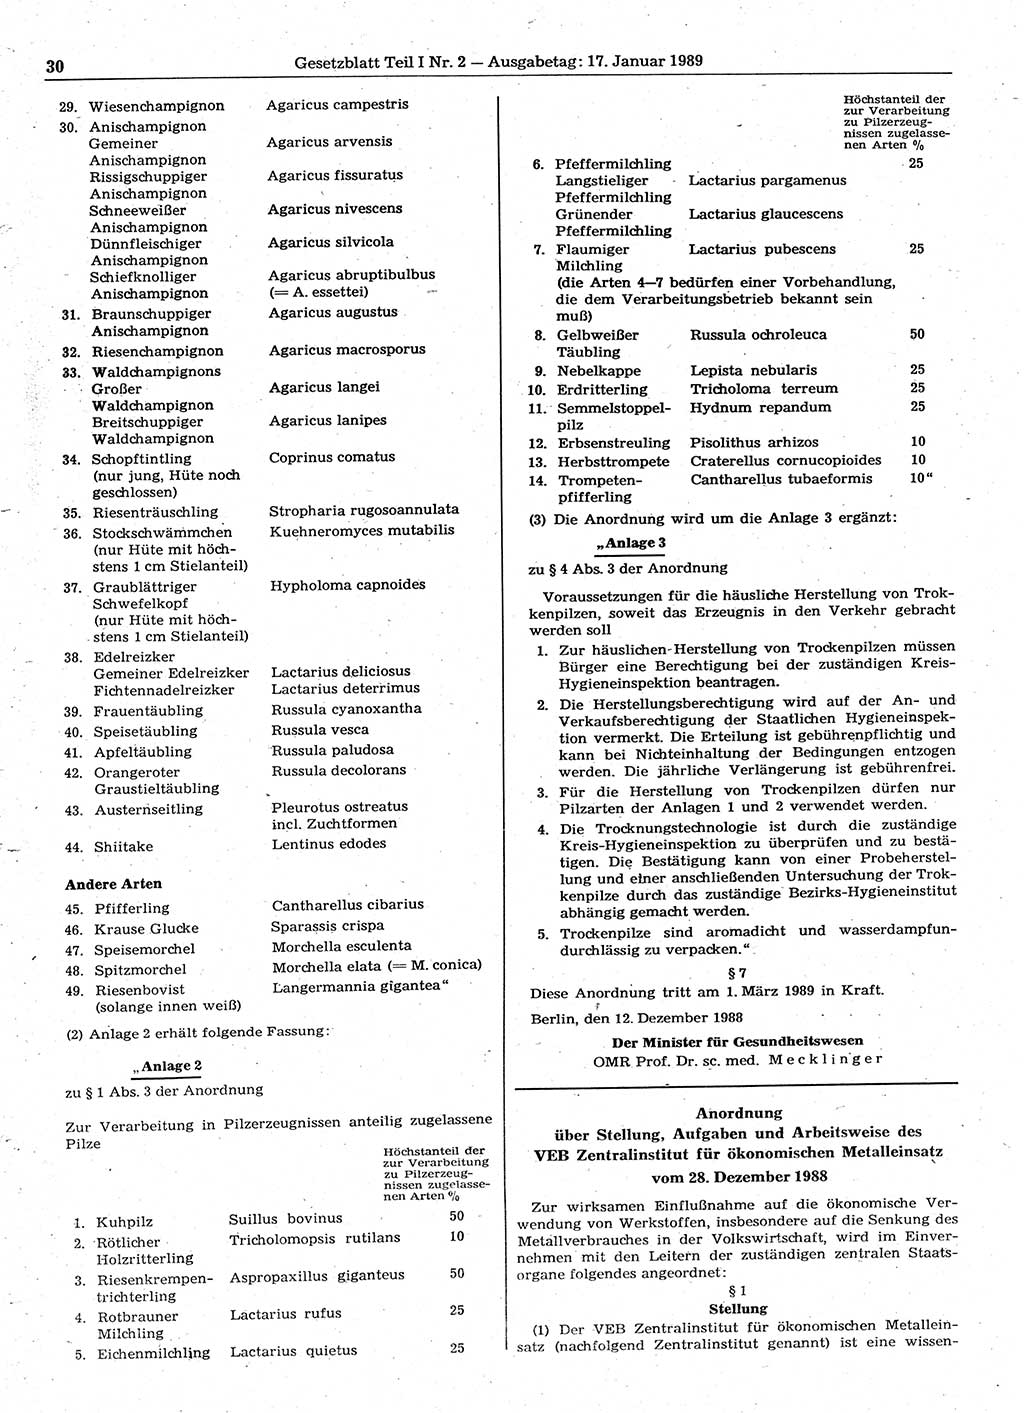 Gesetzblatt (GBl.) der Deutschen Demokratischen Republik (DDR) Teil Ⅰ 1989, Seite 30 (GBl. DDR Ⅰ 1989, S. 30)